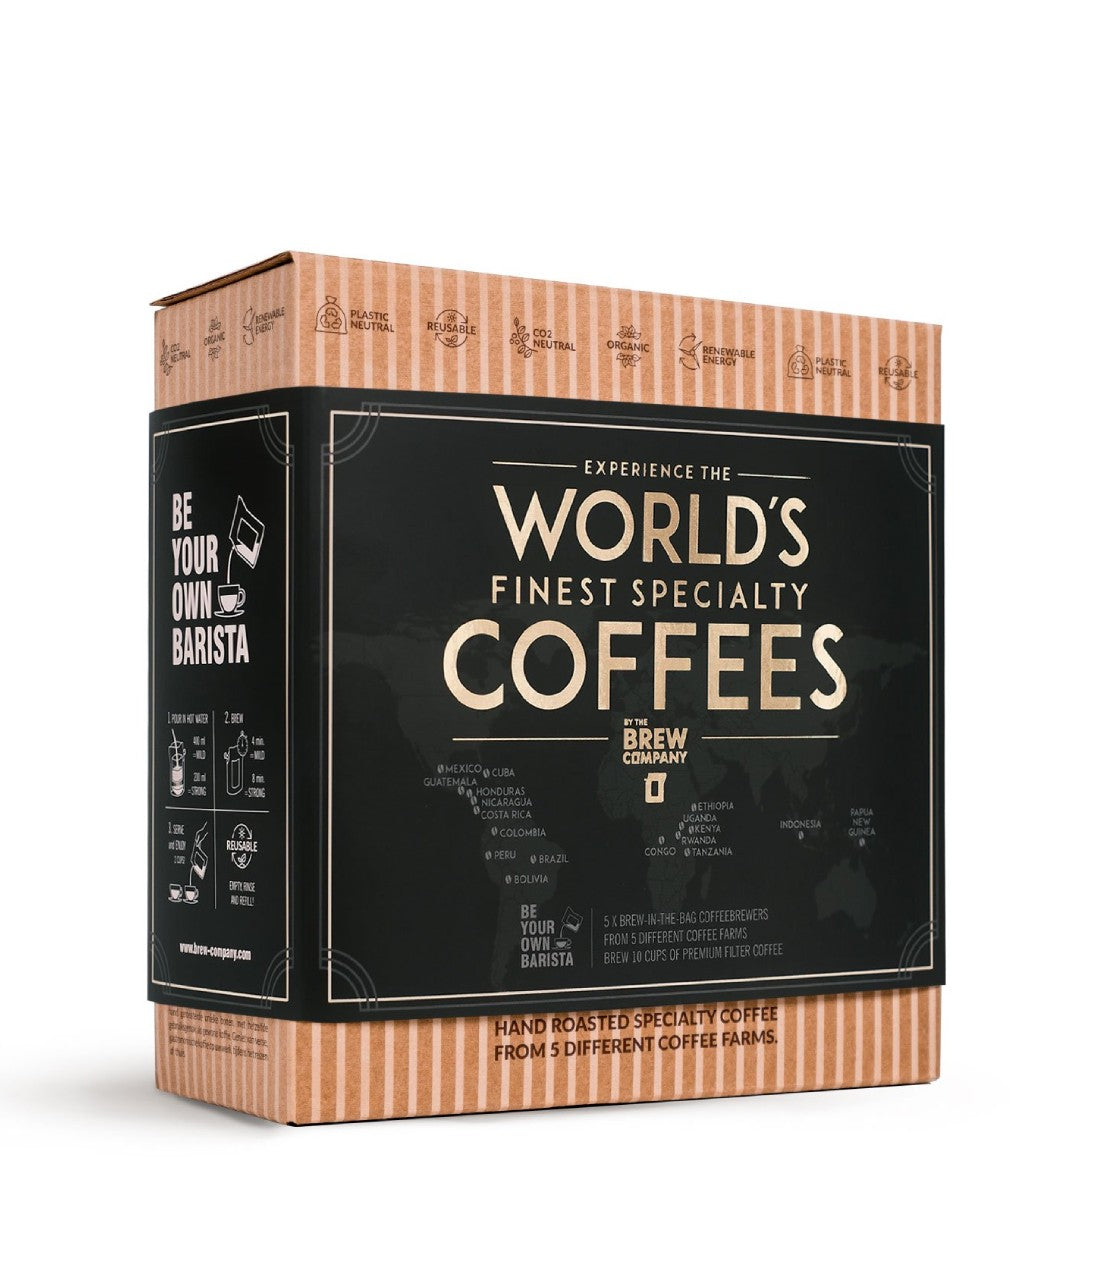 Kavos dovanų rinkinys Coffeebrewer, 5 skirtingų rūšių pakeliai